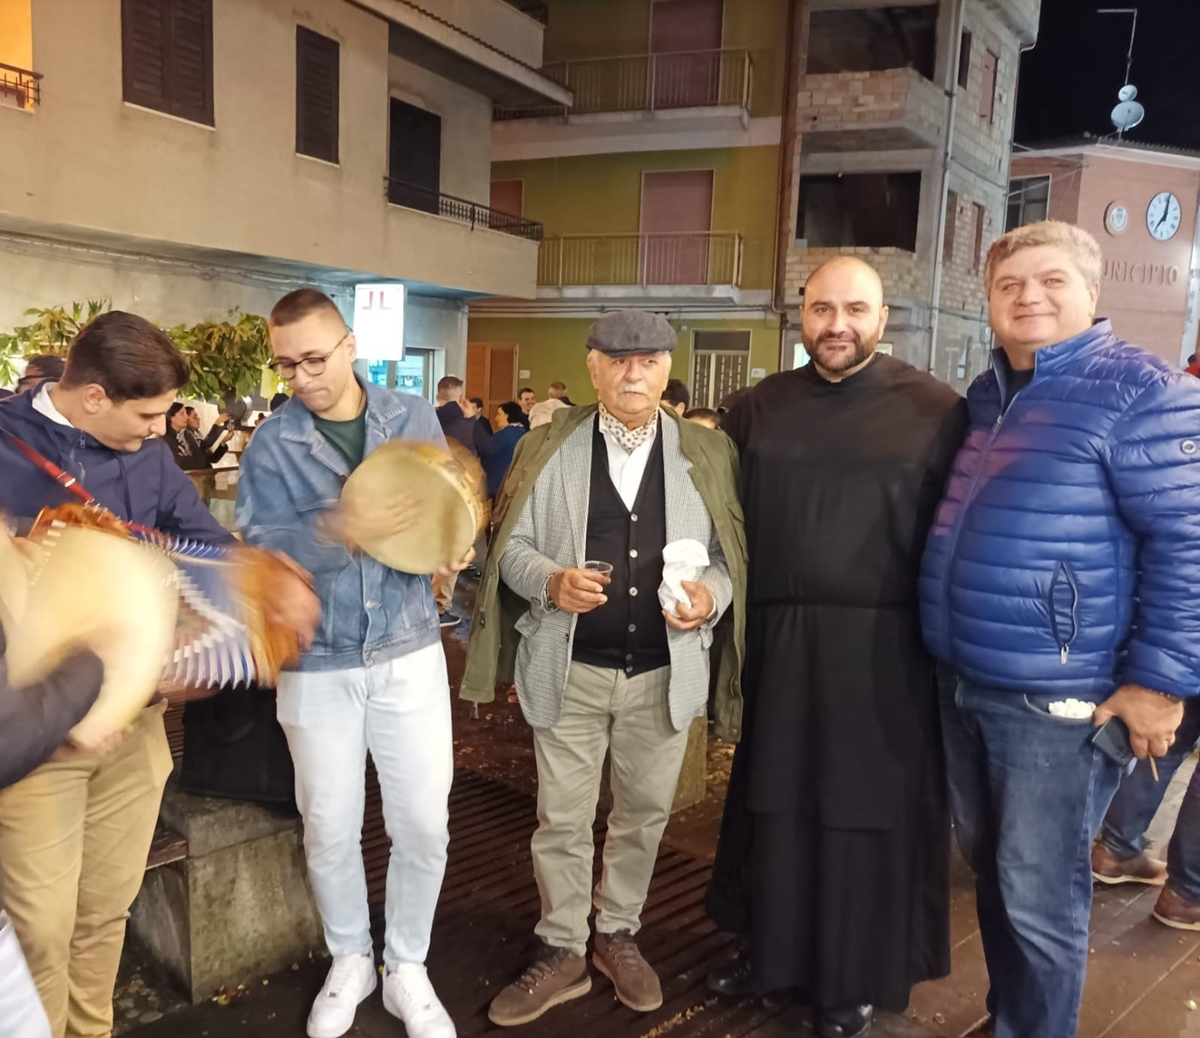 San Roberto, in piazza a festeggiare San Martino nonostante la pioggia